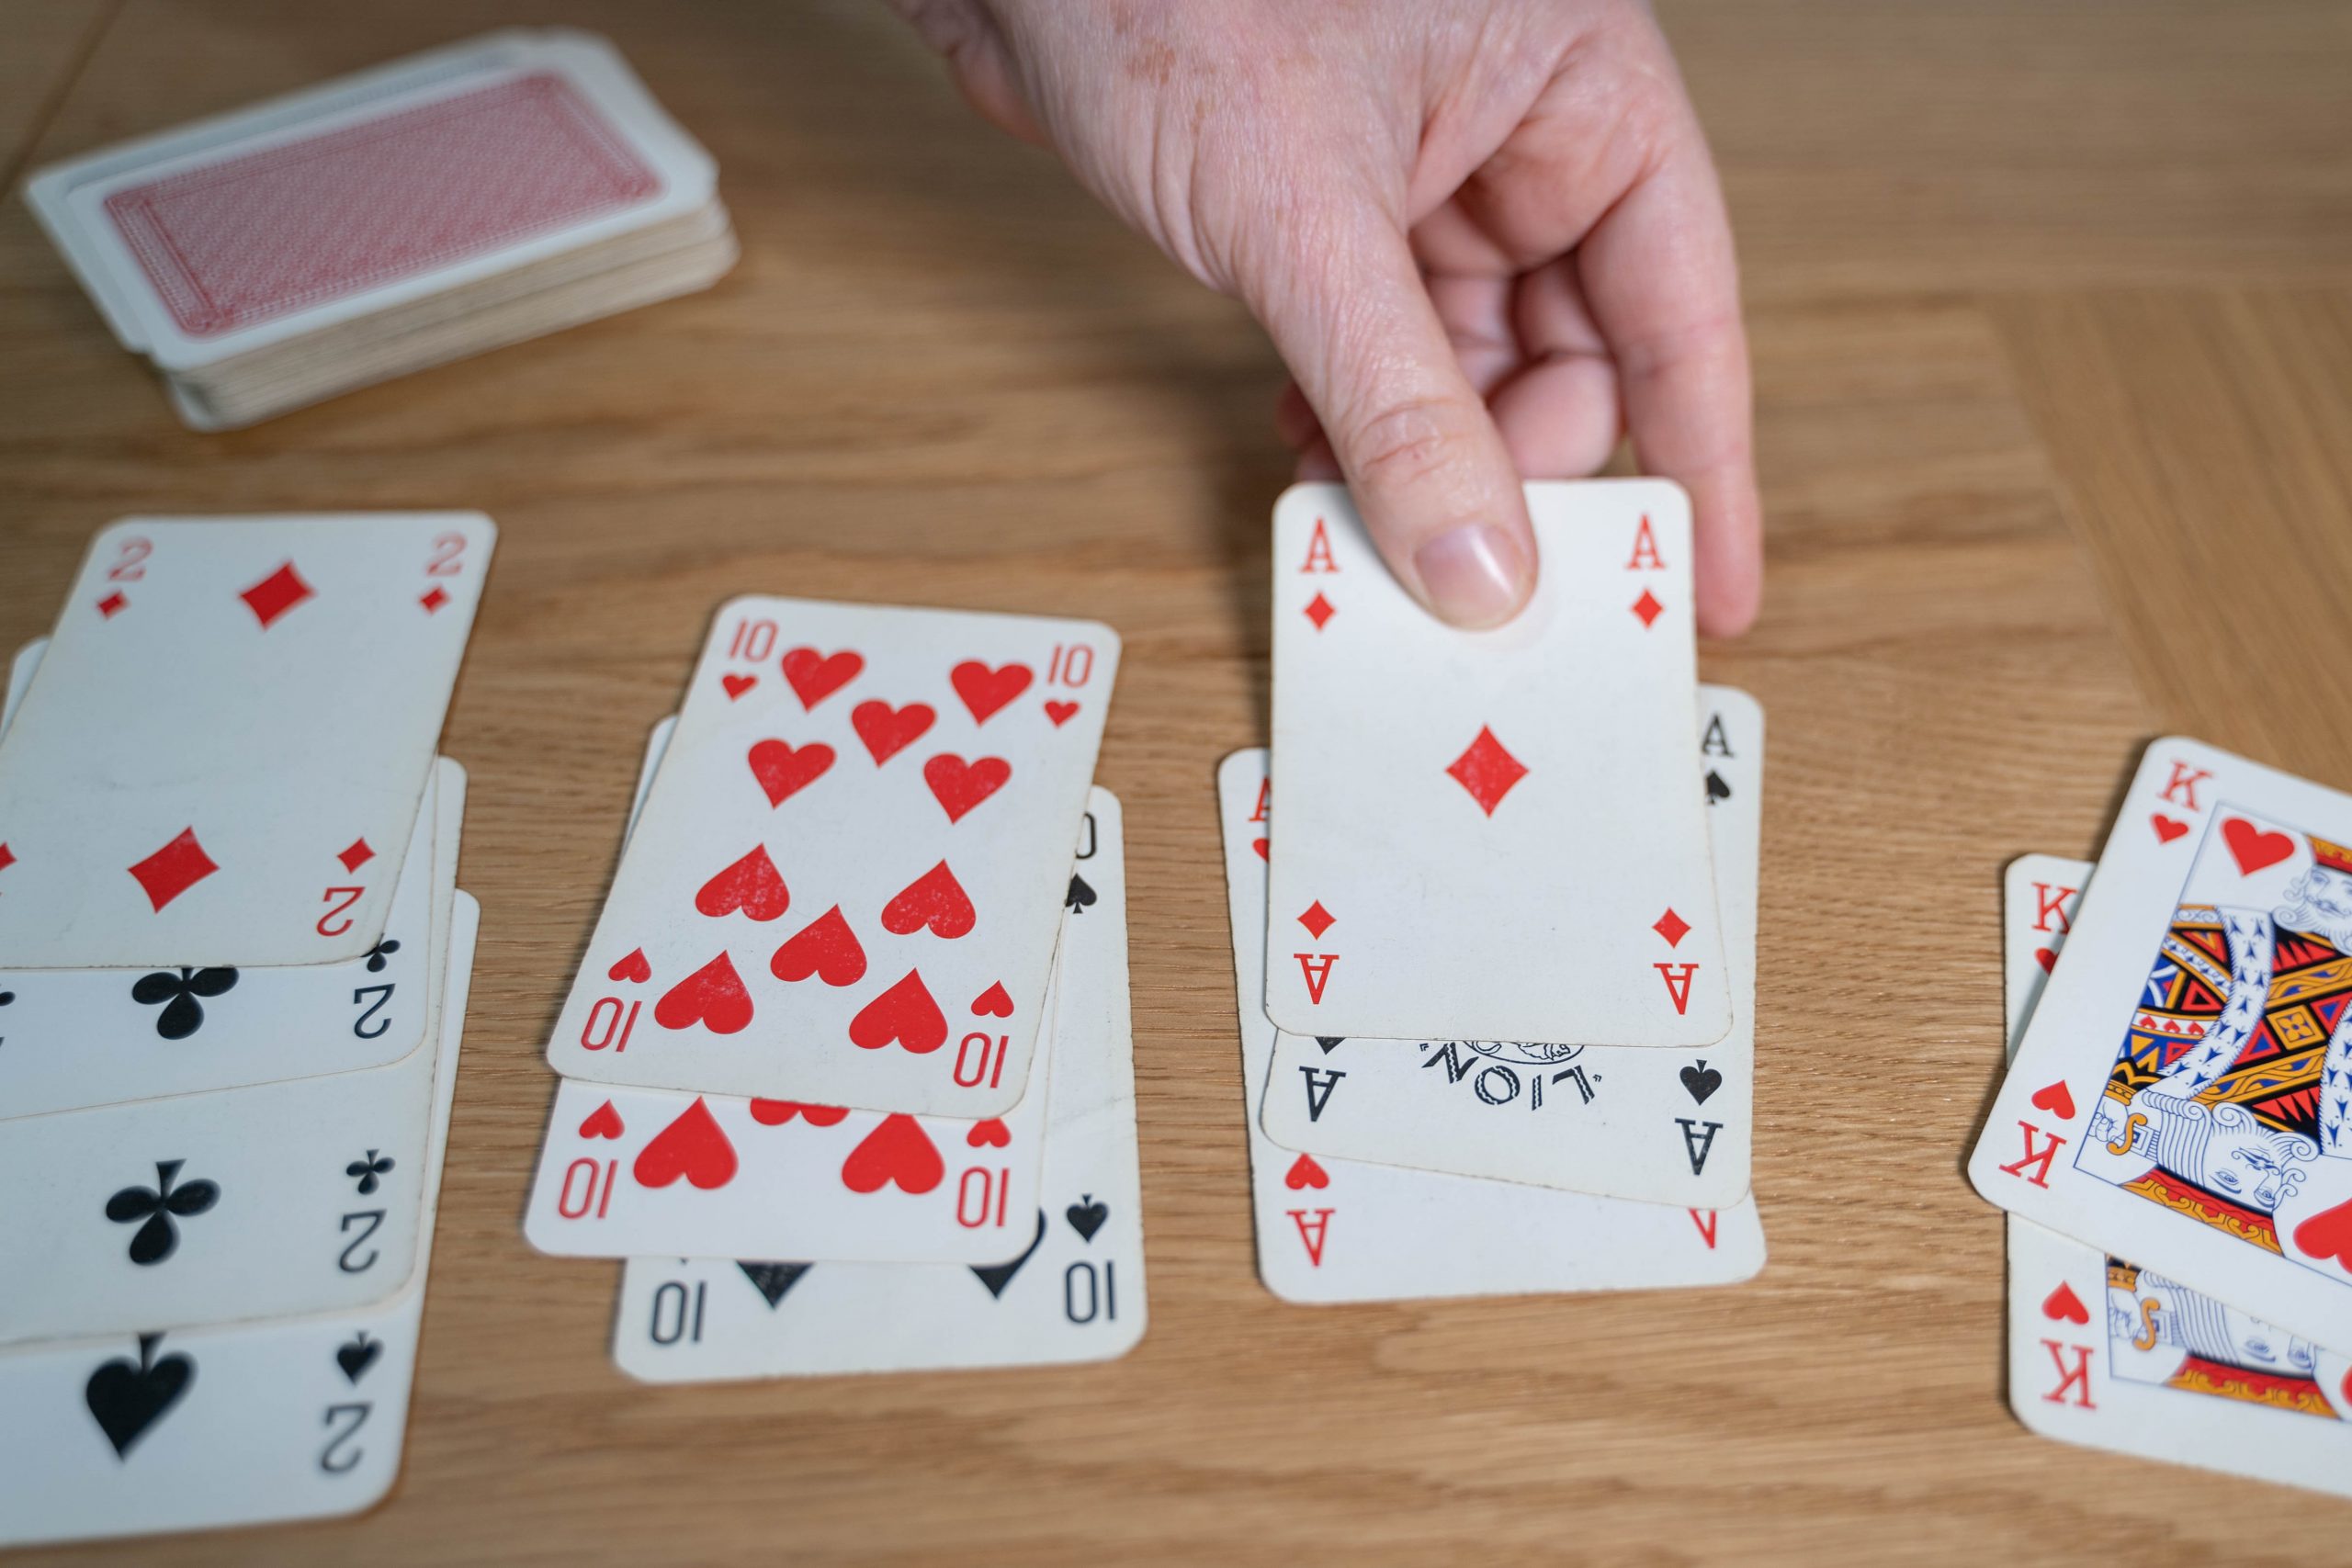 .קלפי משחק מסודרים בארבע קבוצות על שולחן. בכל קבוצה, קלפים עם אותו מספר אך צורה אחרת. יד מוסיפה קלף מתאים לאחת הקבוצות